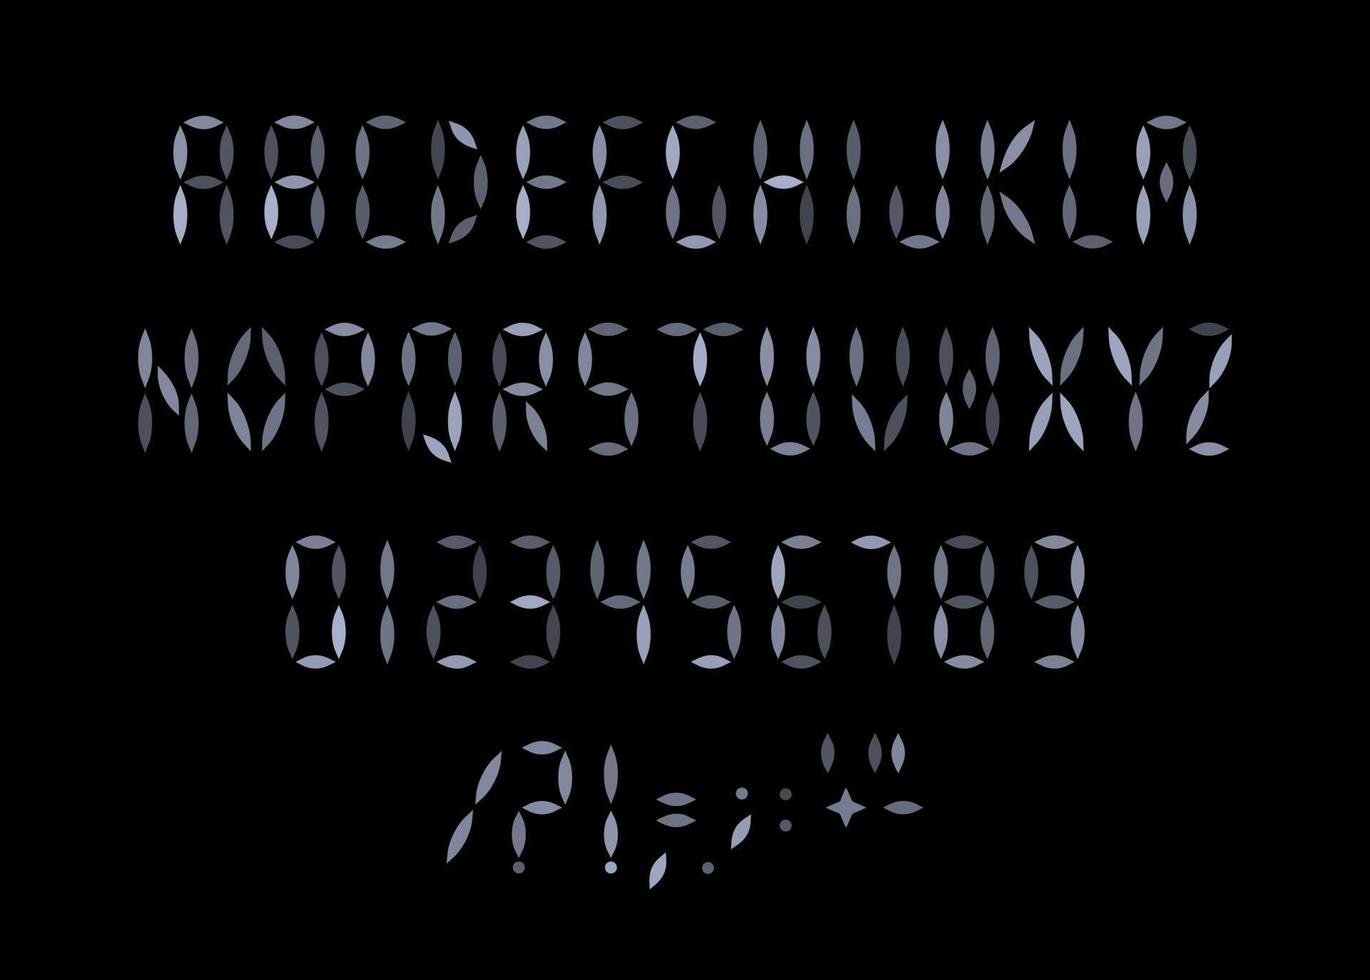 letters, cijfers en tekens voor digitaal scorebord. streepjes strepen, segmenten stijl van alfabet. lettertype voor led-display, scorebord, scherm van elektronische apparaten, cijferbord. vector typografie ontwerp